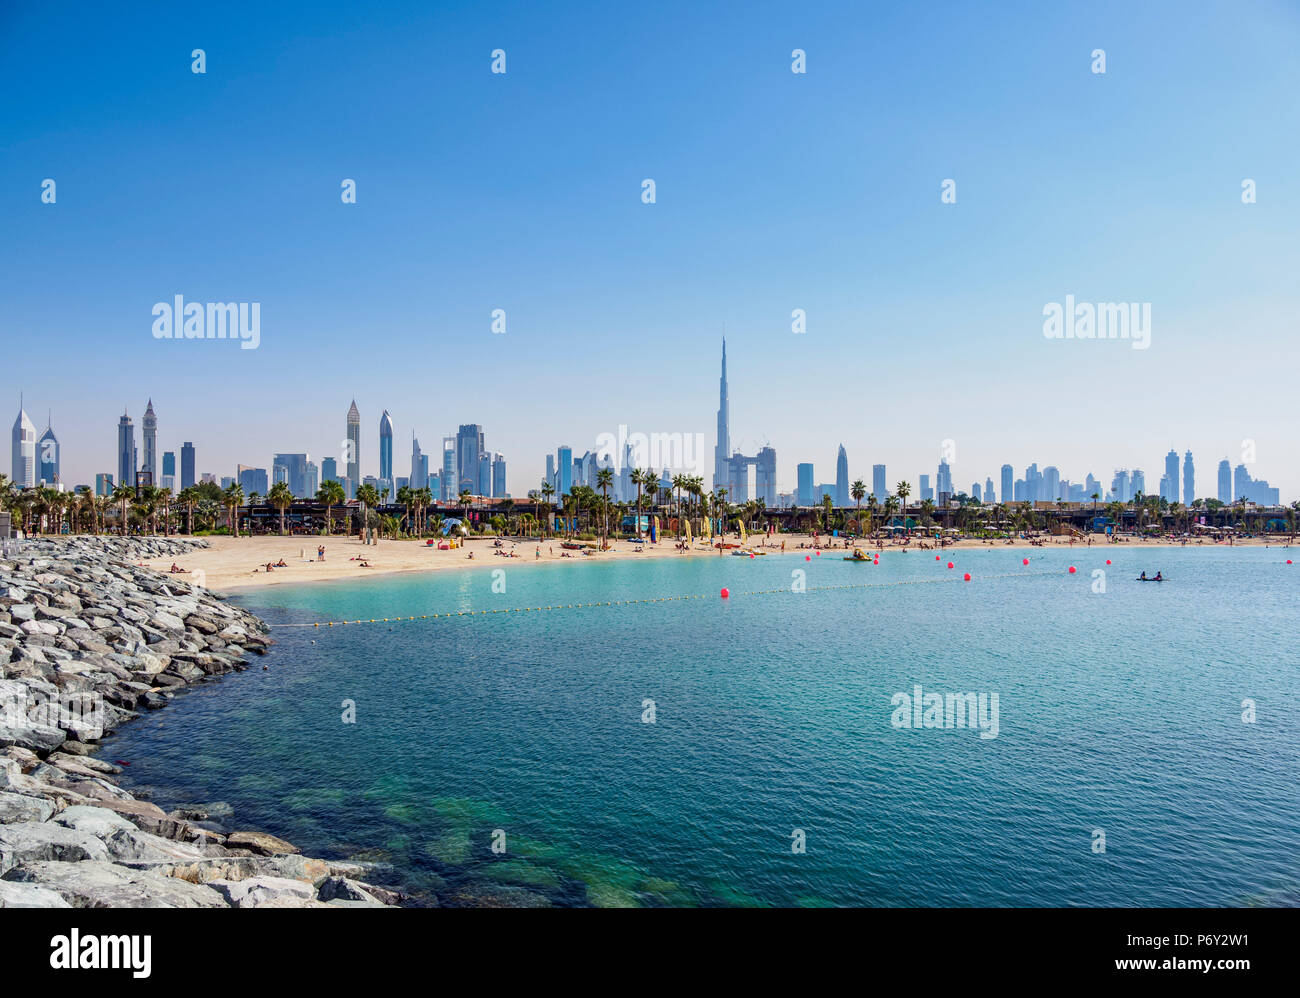 La playa de Jumeirah y el horizonte de la ciudad, Dubai, Emiratos Árabes Unidos. Foto de stock